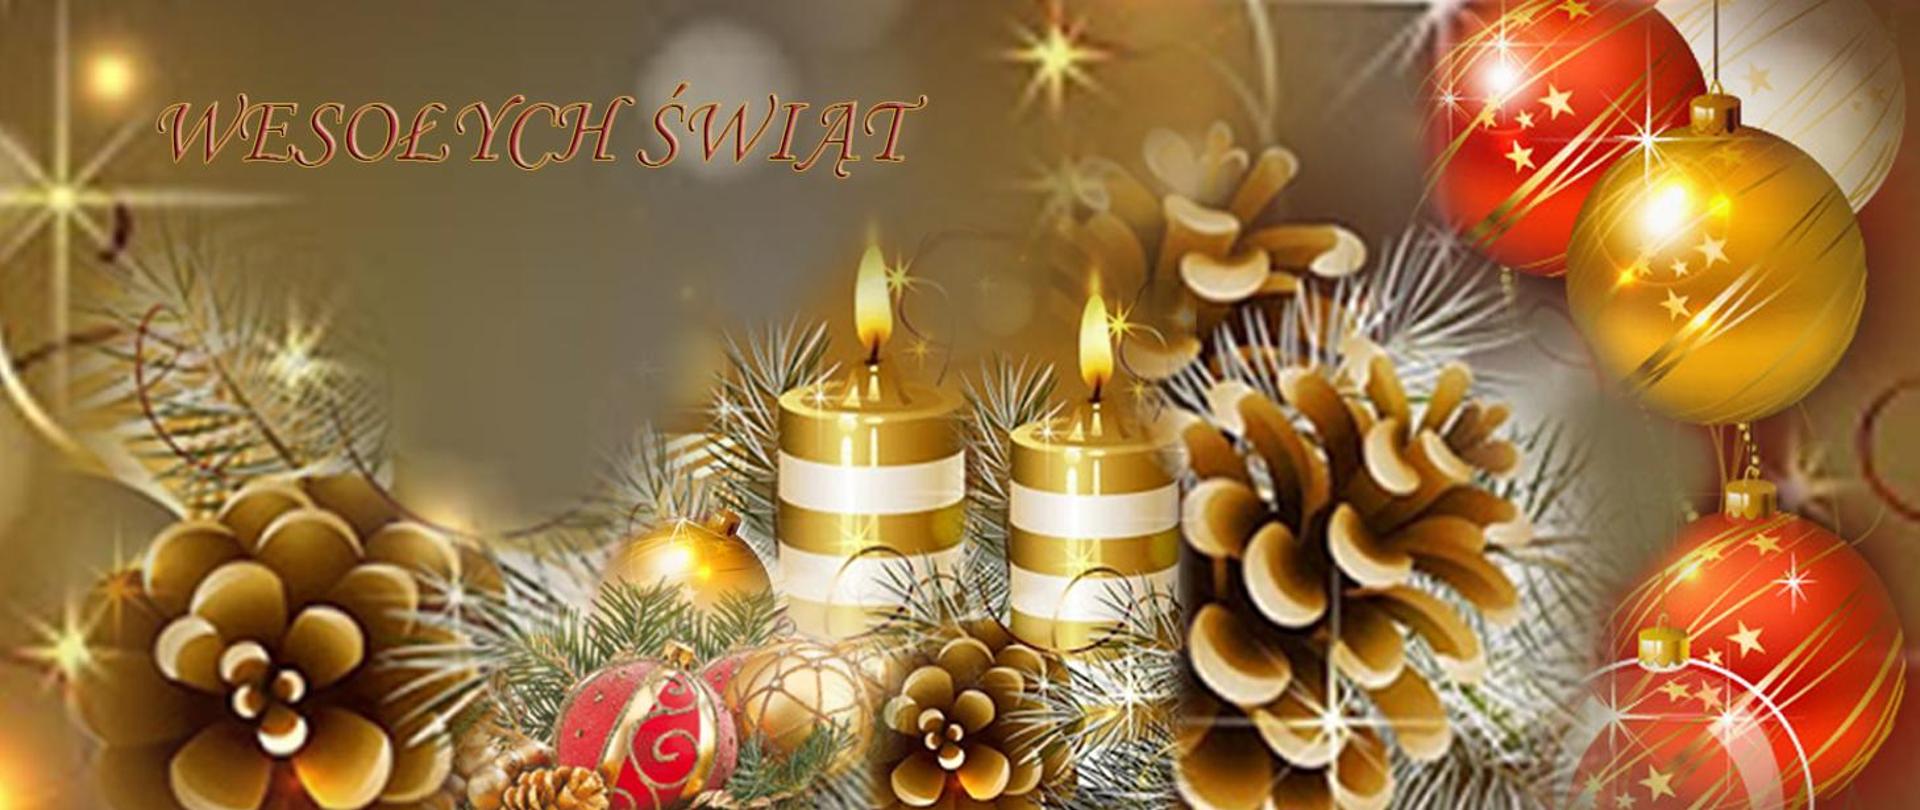 Zdjęcie przedstawia obrazek świąteczny, na przednim planie dwie płonące świeczki, szyszki, bombki, napis "Wesołych świąt"